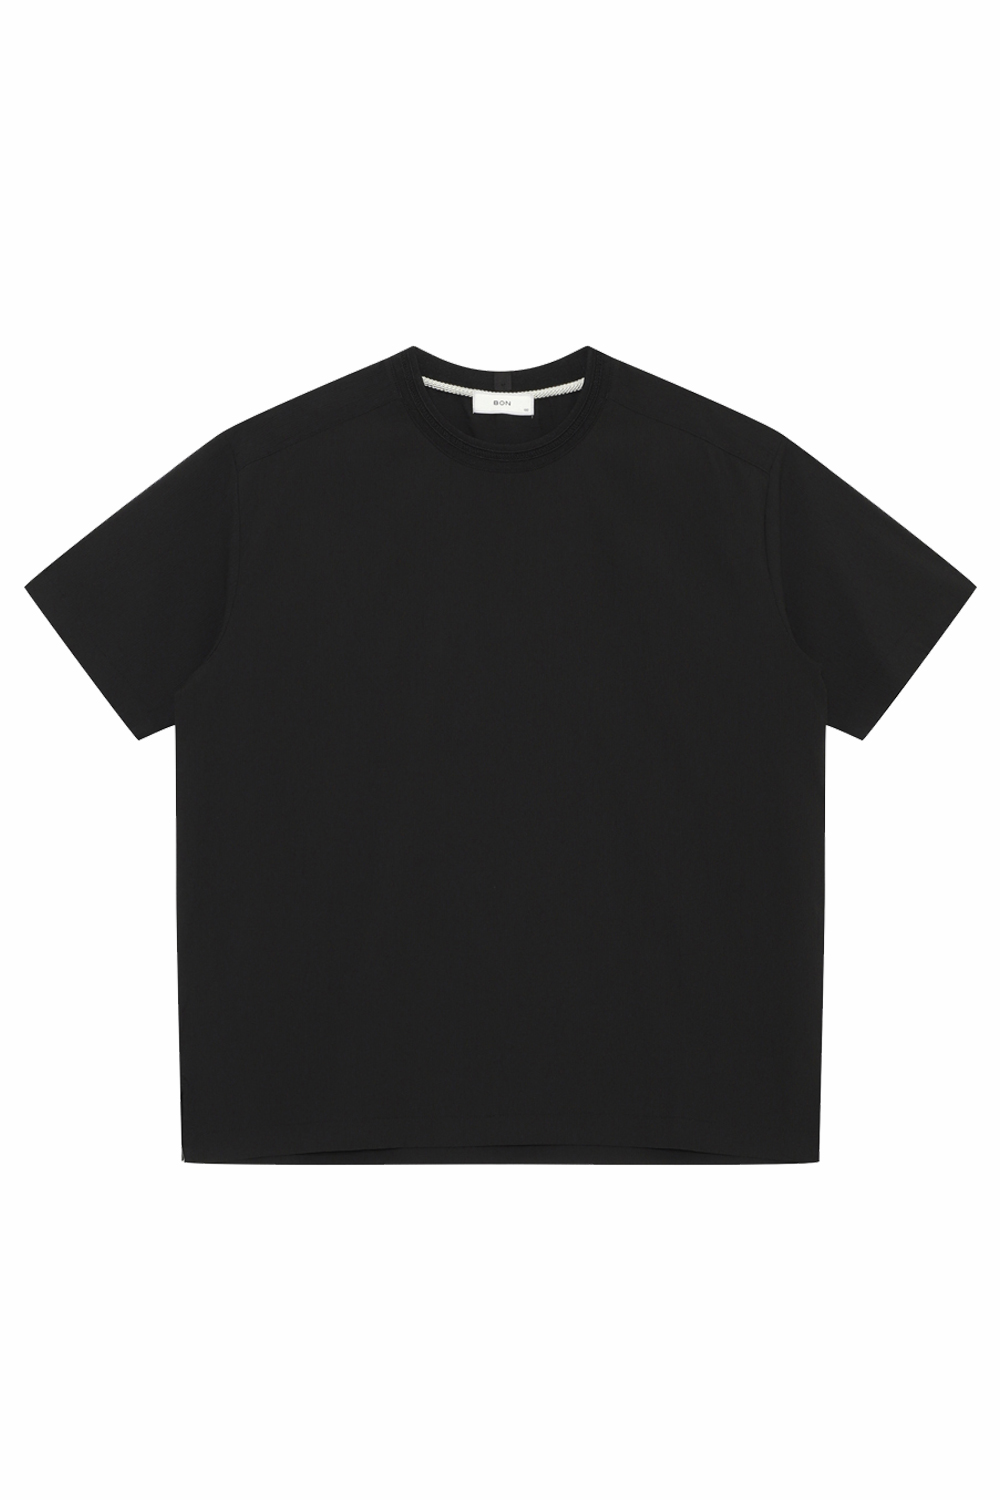 [공식스토어] 크링클 플리츠 오버핏 티셔츠 BN3MTS763BK